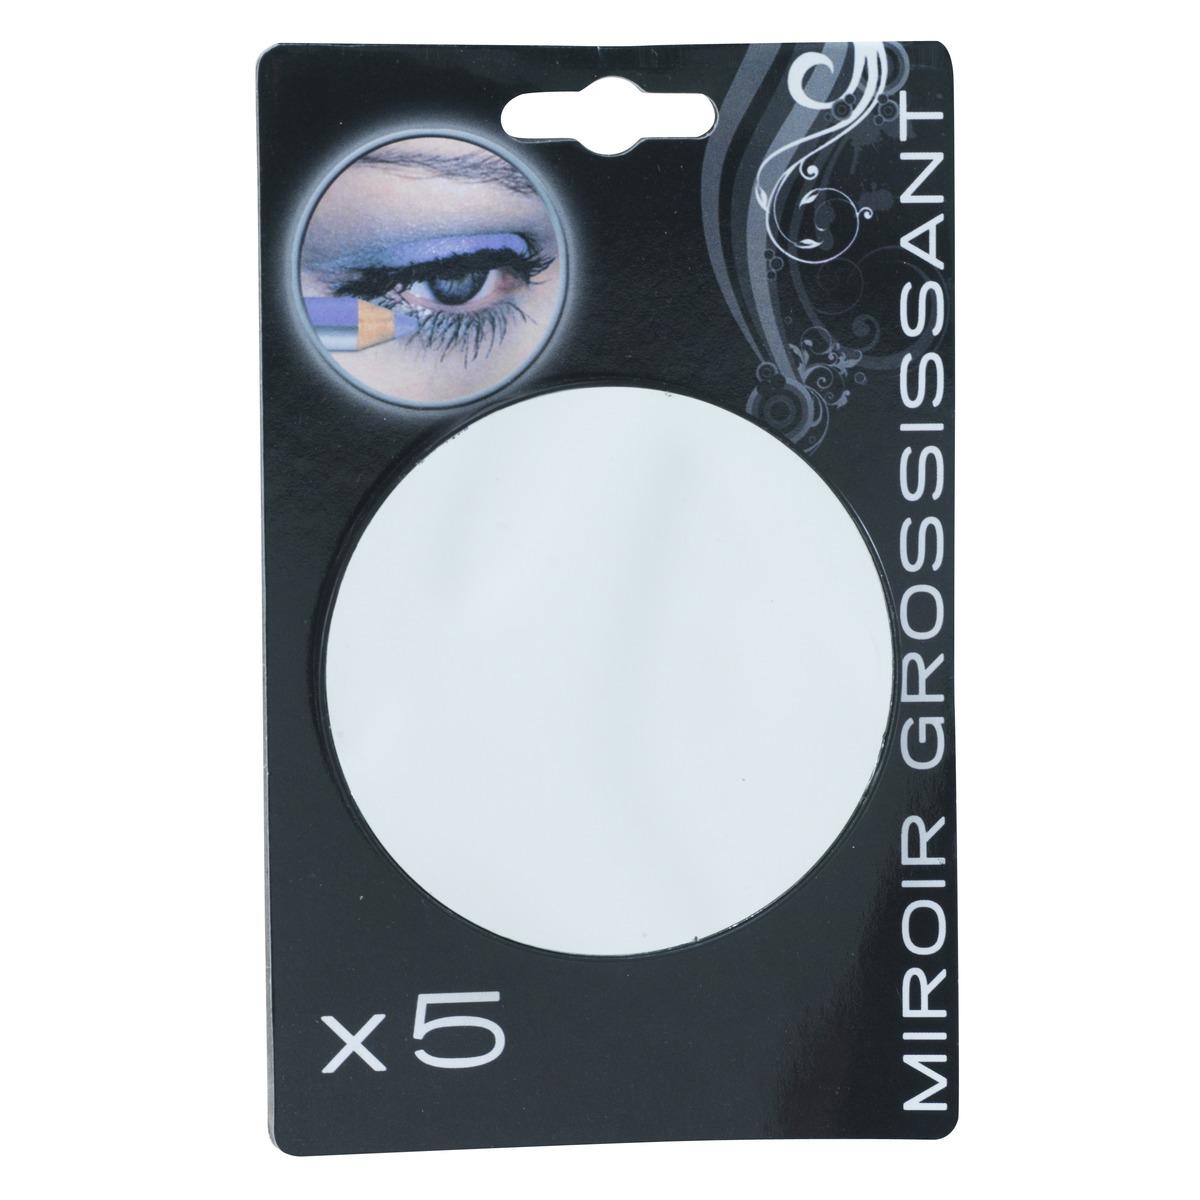 Miroir grossissant x 5 - Diamètre 8,5 cm - Noir, Gris